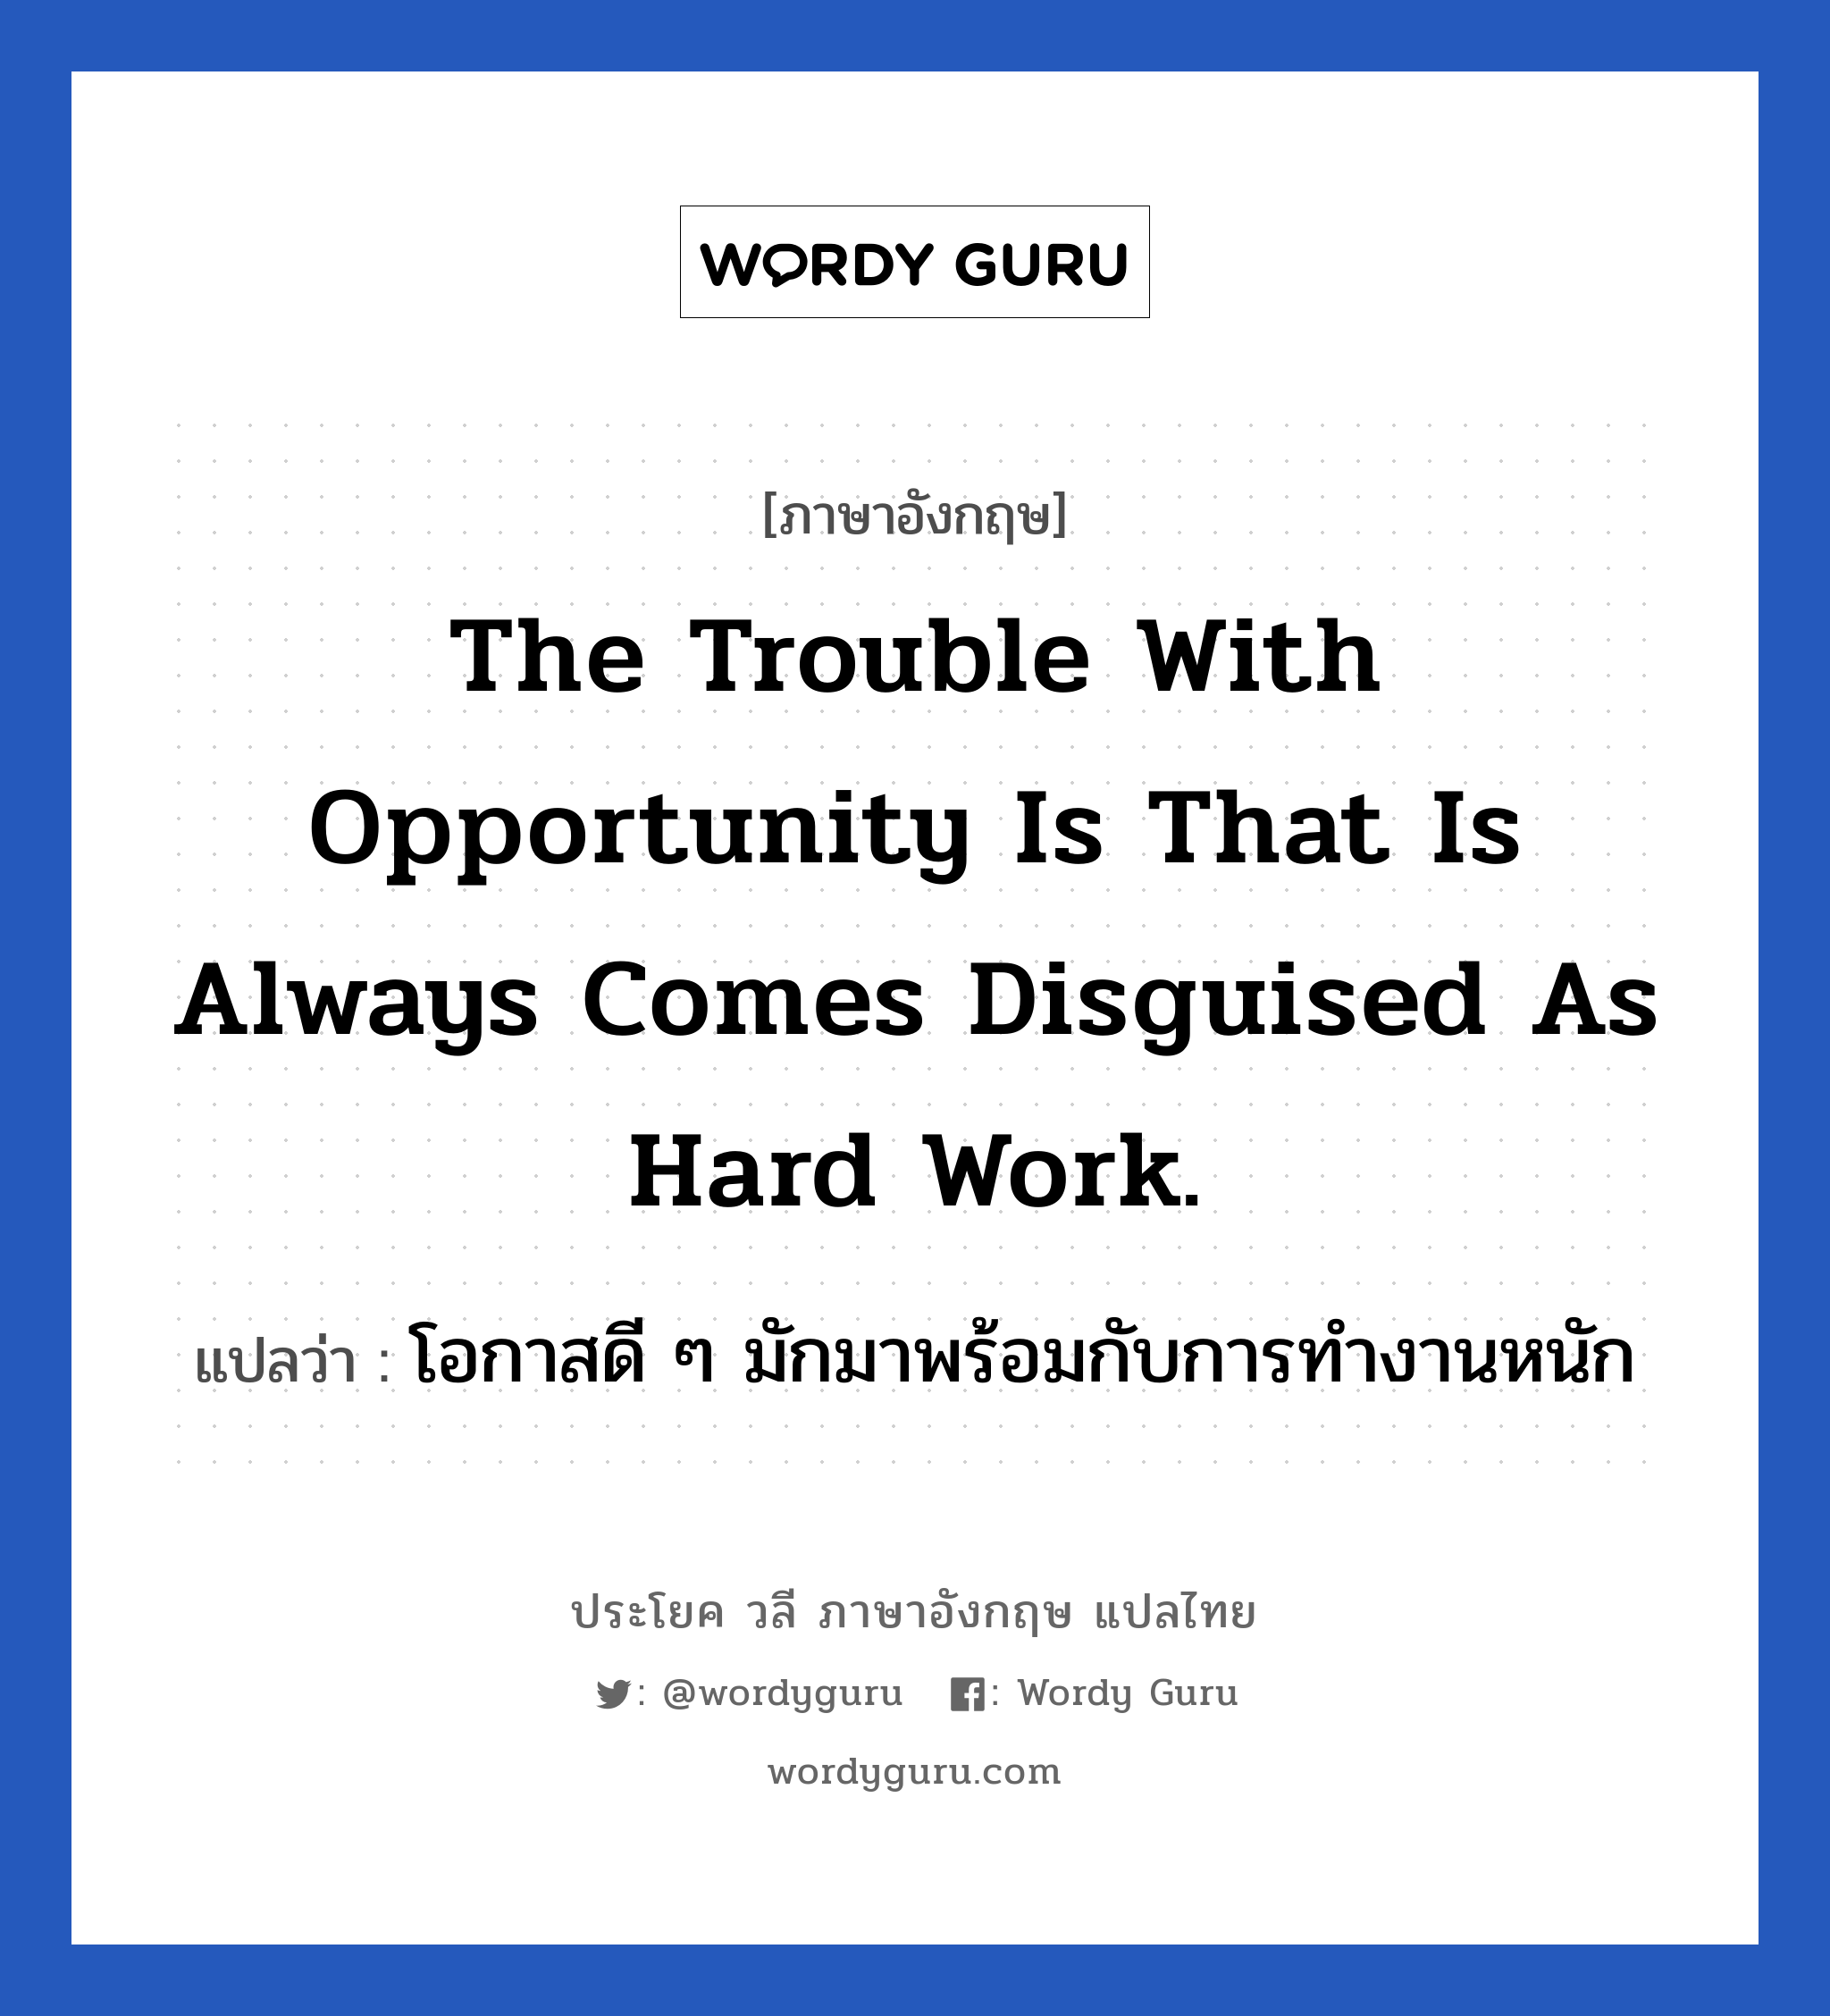 โอกาสดี ๆ มักมาพร้อมกับการทำงานหนัก ภาษาอังกฤษ?, วลีภาษาอังกฤษ โอกาสดี ๆ มักมาพร้อมกับการทำงานหนัก แปลว่า The trouble with opportunity is that is always comes disguised as hard work. หมวด ในที่ทำงาน